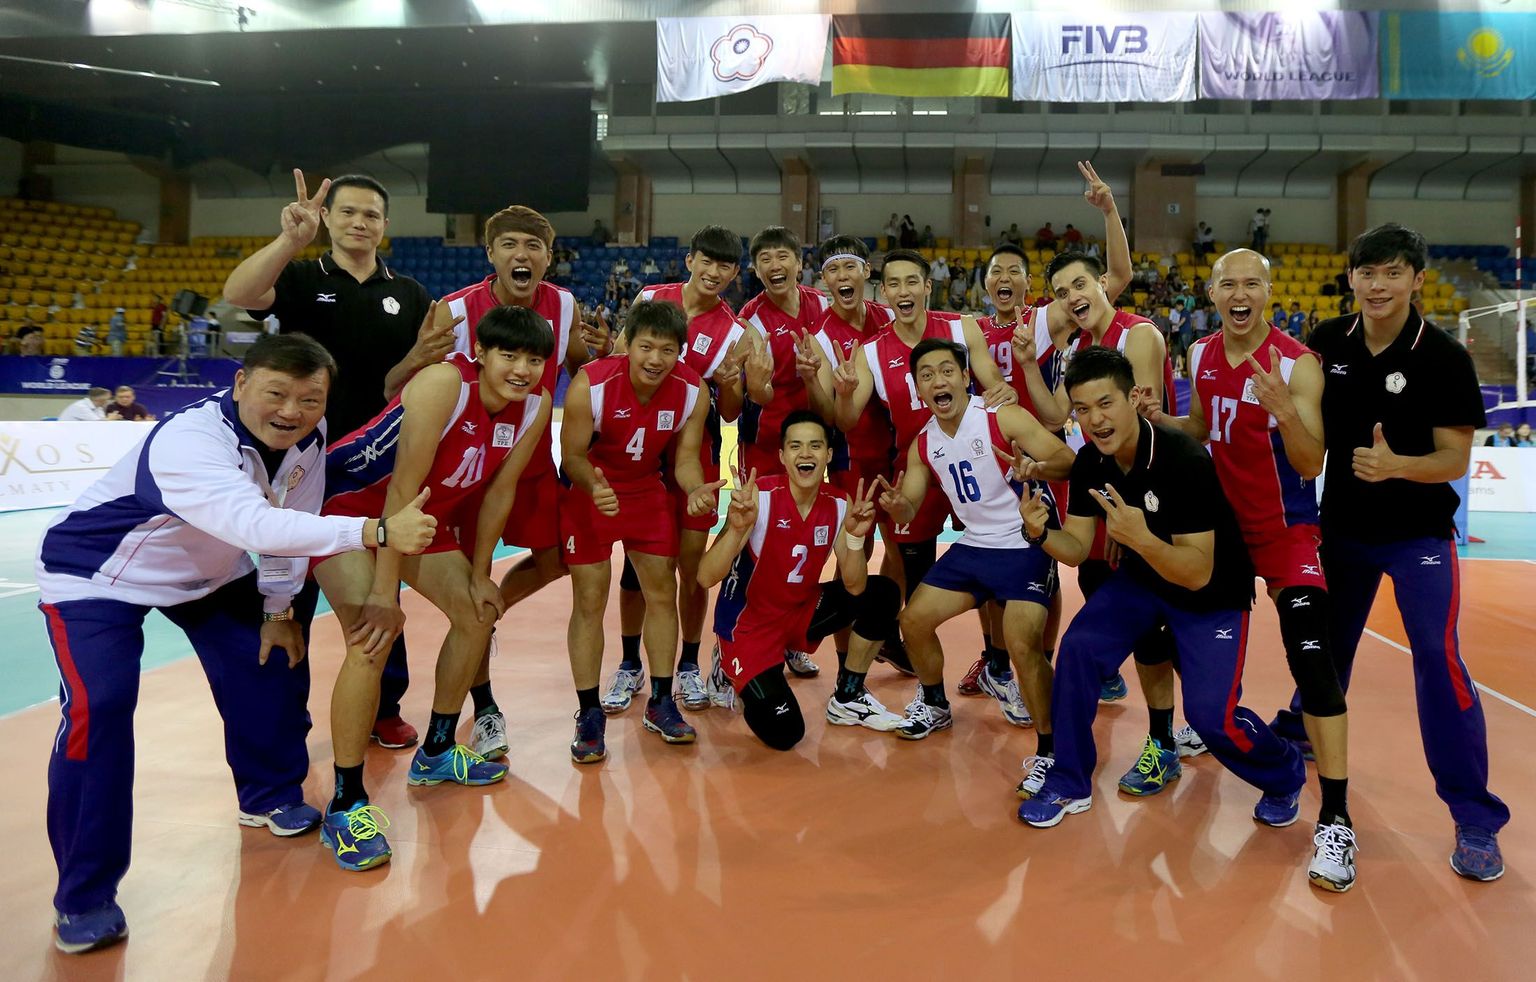 Hiina Taipei võrkpallikoondis eelmisel suvel, kui Maailmaliigas saadi jagu Kasahstanist.